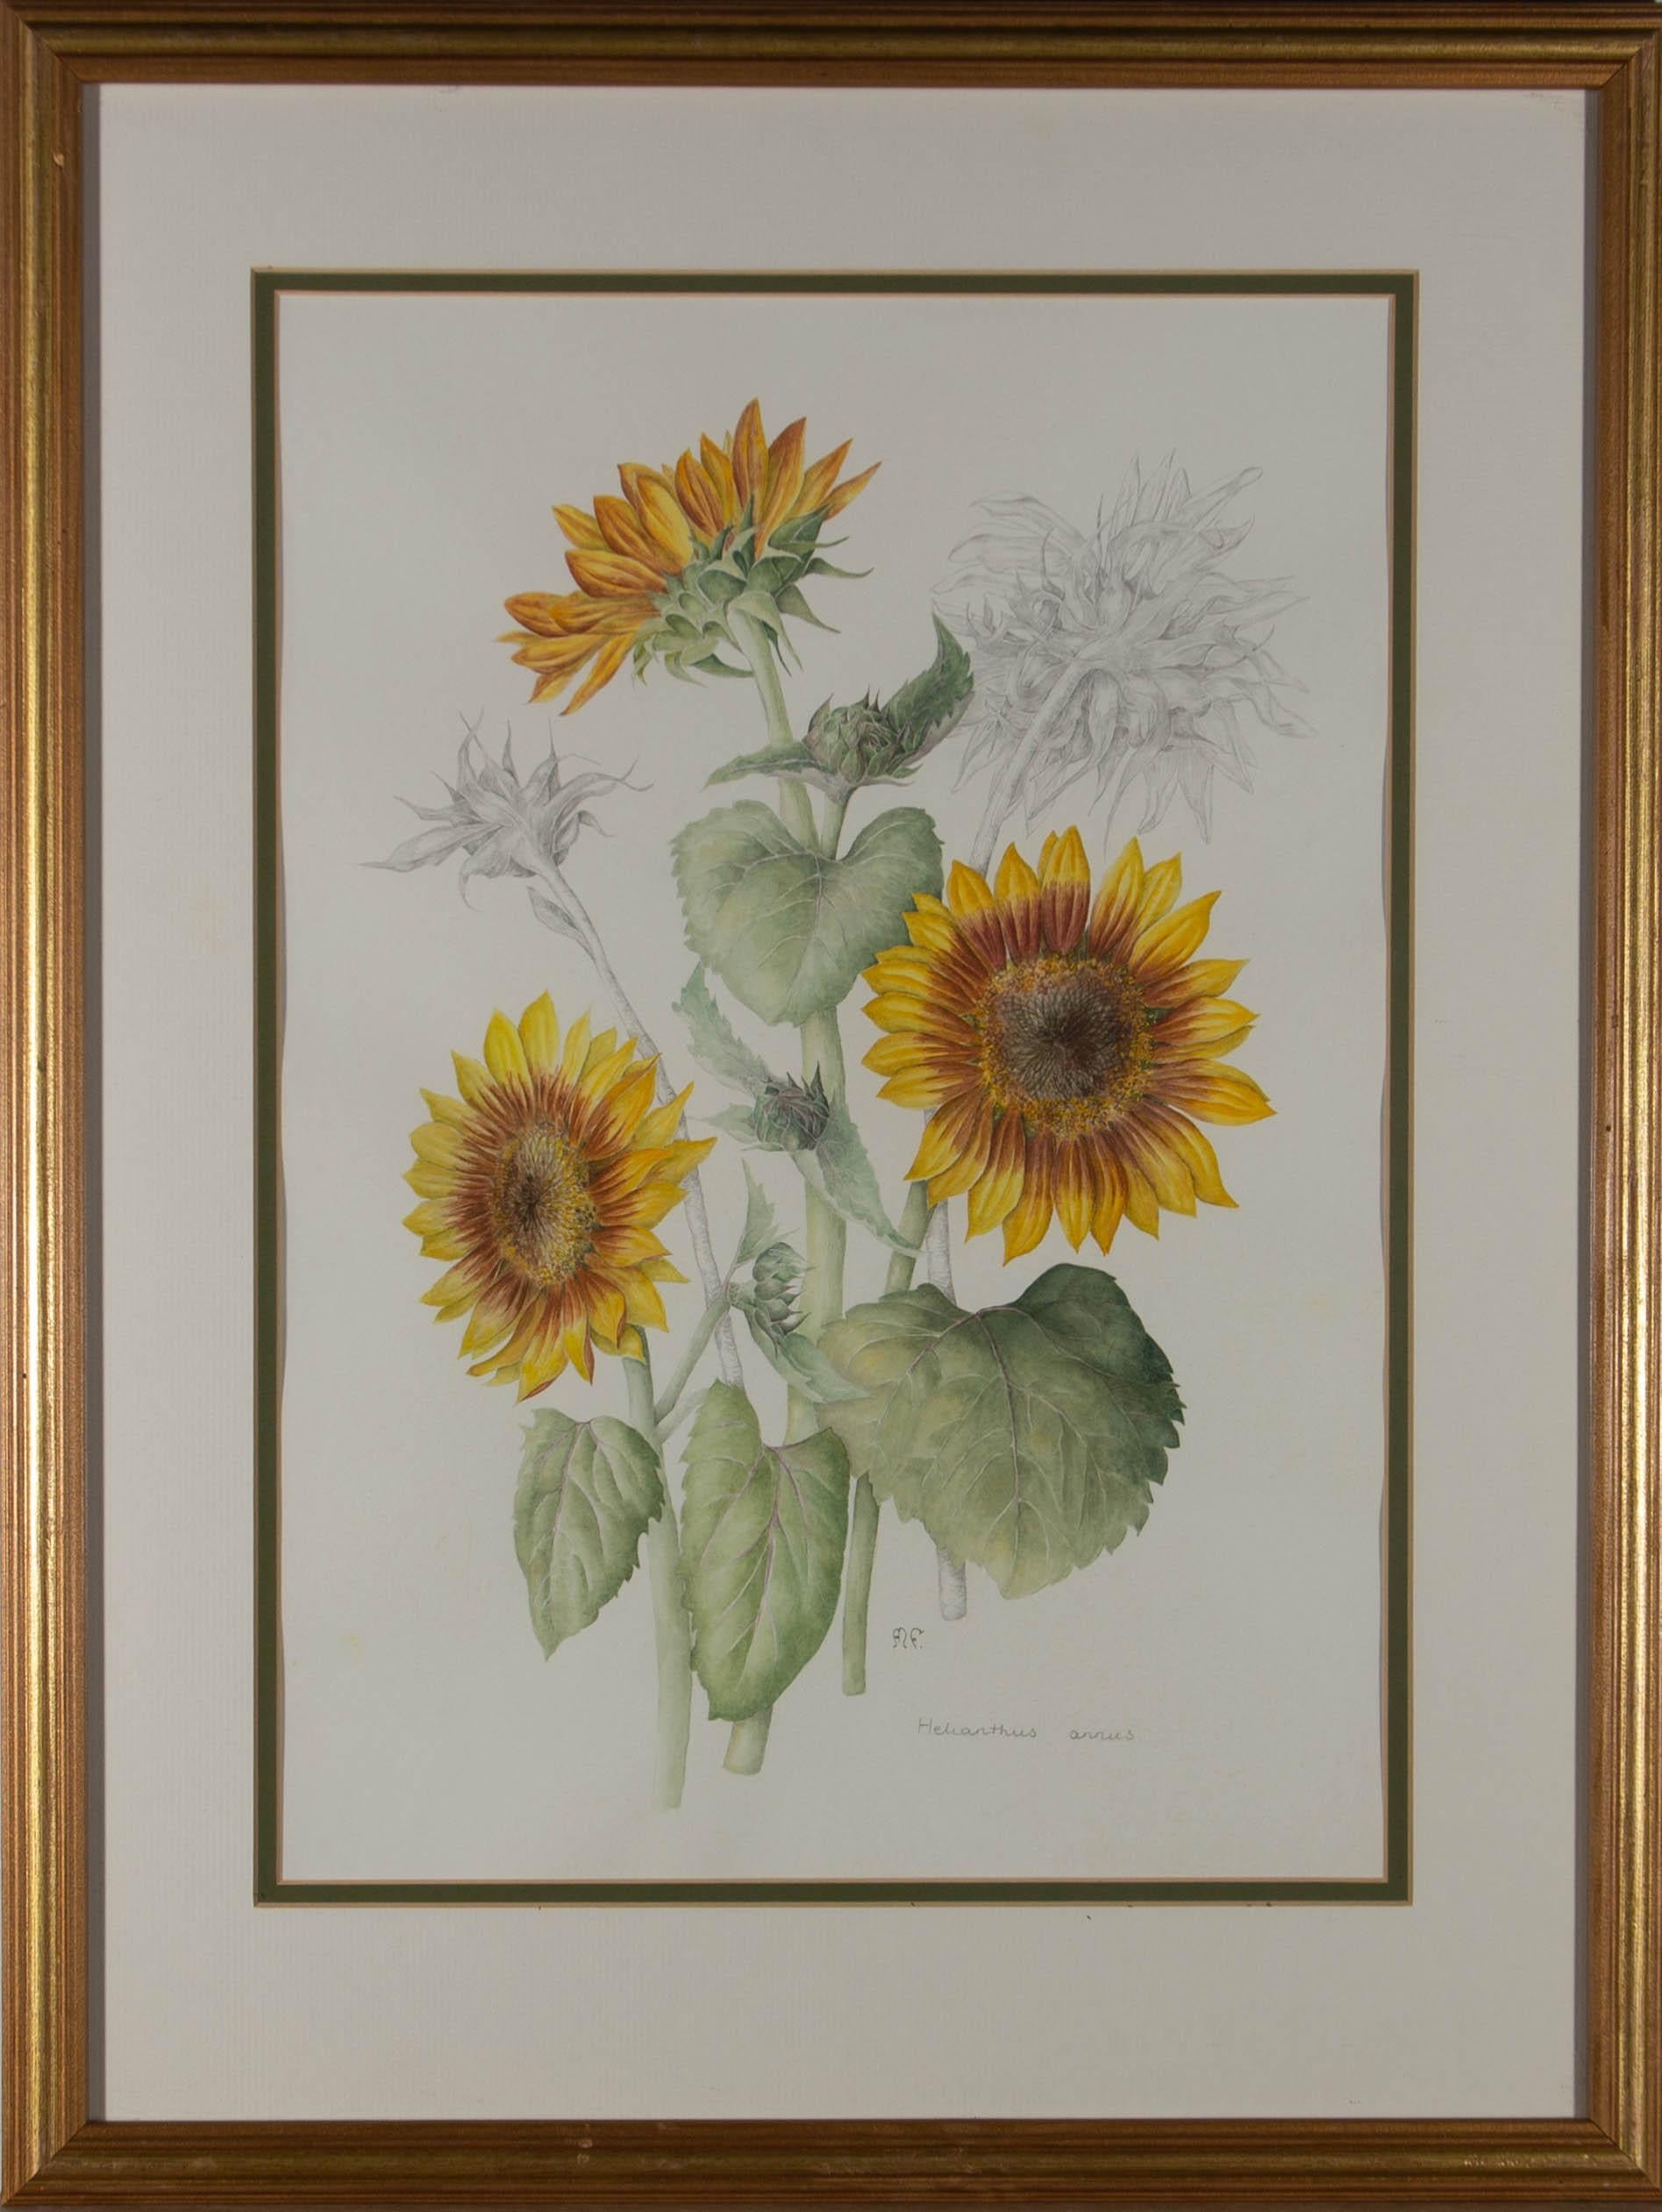 Eine zarte Aquarellstudie von Sonnenblumen in der Blütezeit, die mit ähnlichen Graphitstudien der Blume in ihren späteren Stadien verflochten ist. Es wird in einem doppelten Passepartout und einem Rahmen mit Vergoldungseffekt präsentiert. Vom